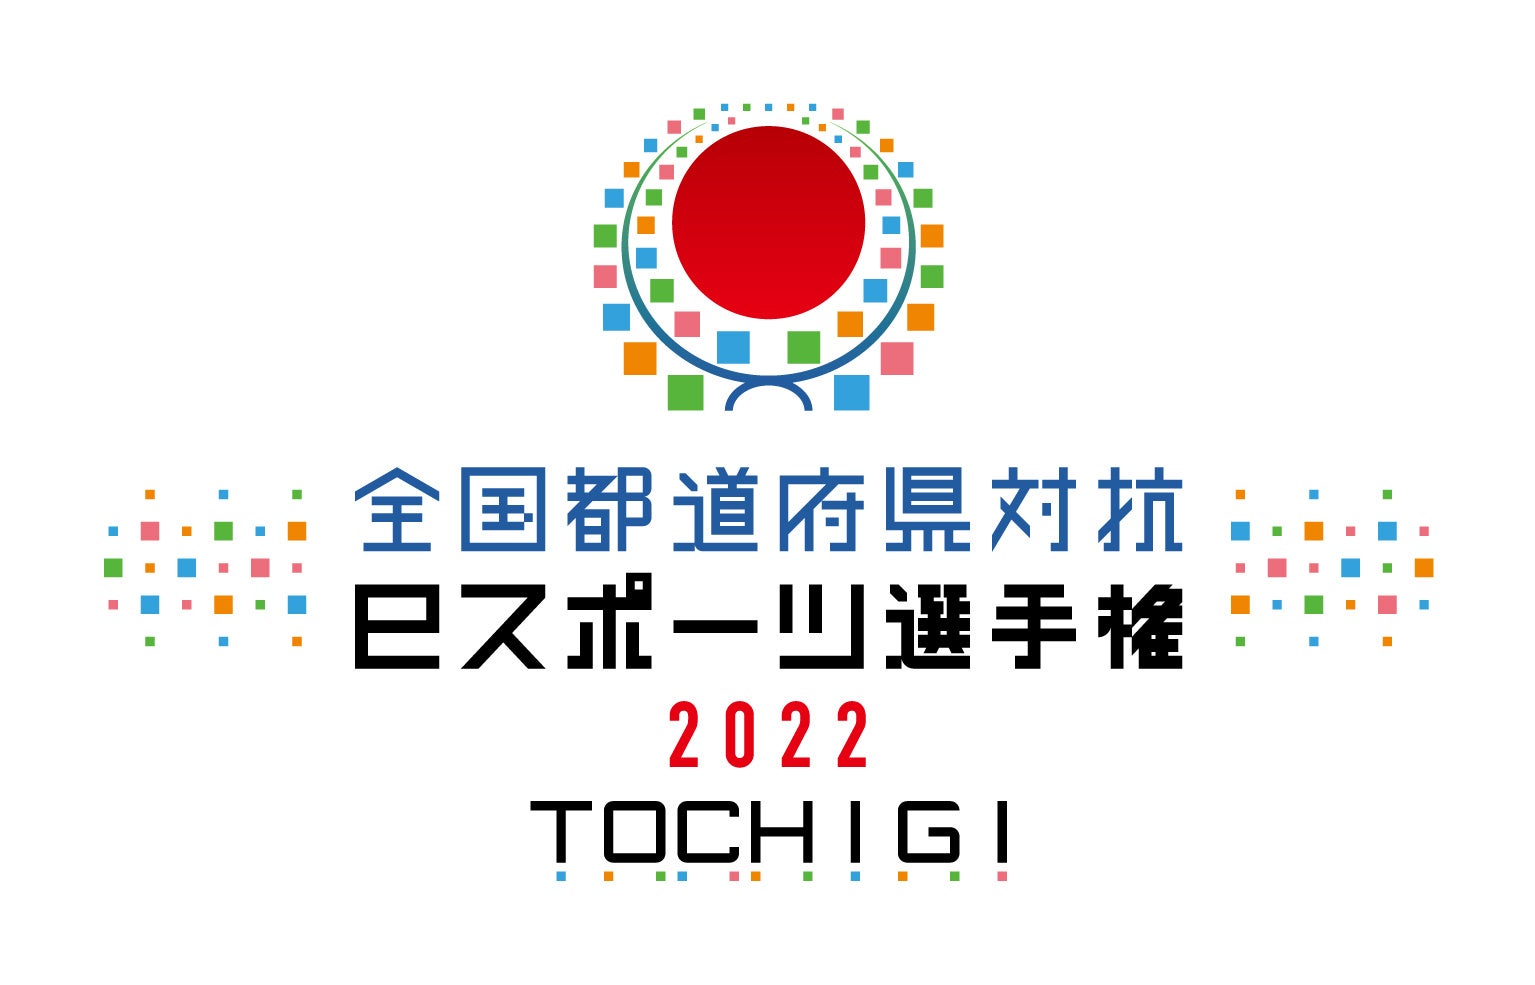 日本一連覇へ全力応”燕”！2022年もオープンハウスグループのトップスポンサー継続が決定！！